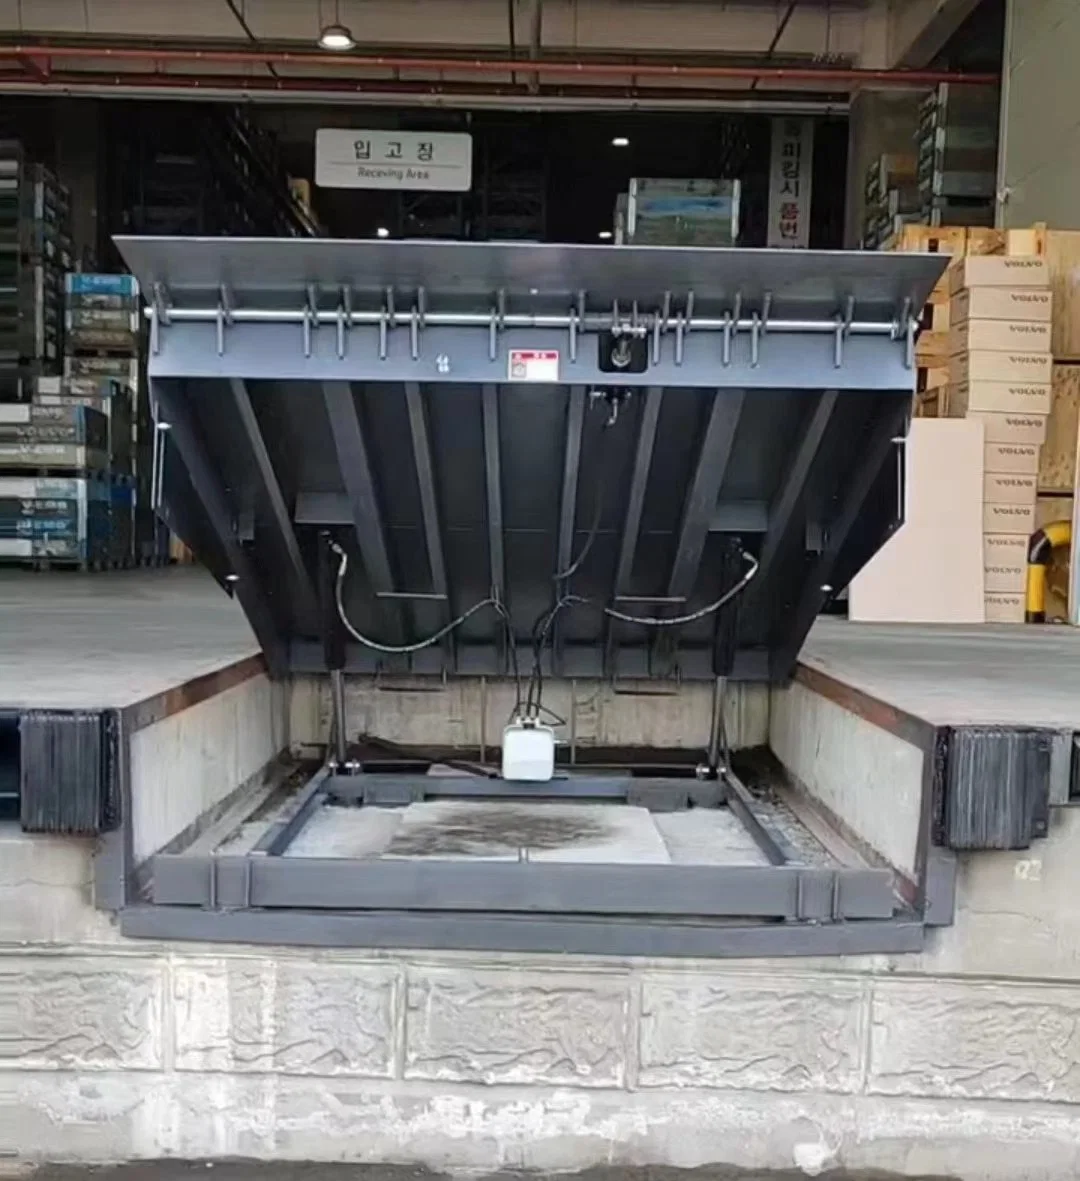 La carga de trabajo pesado carretilla elevadora contenedor de carga de la rampa mecánica de la mesa elevadora parado niveladora